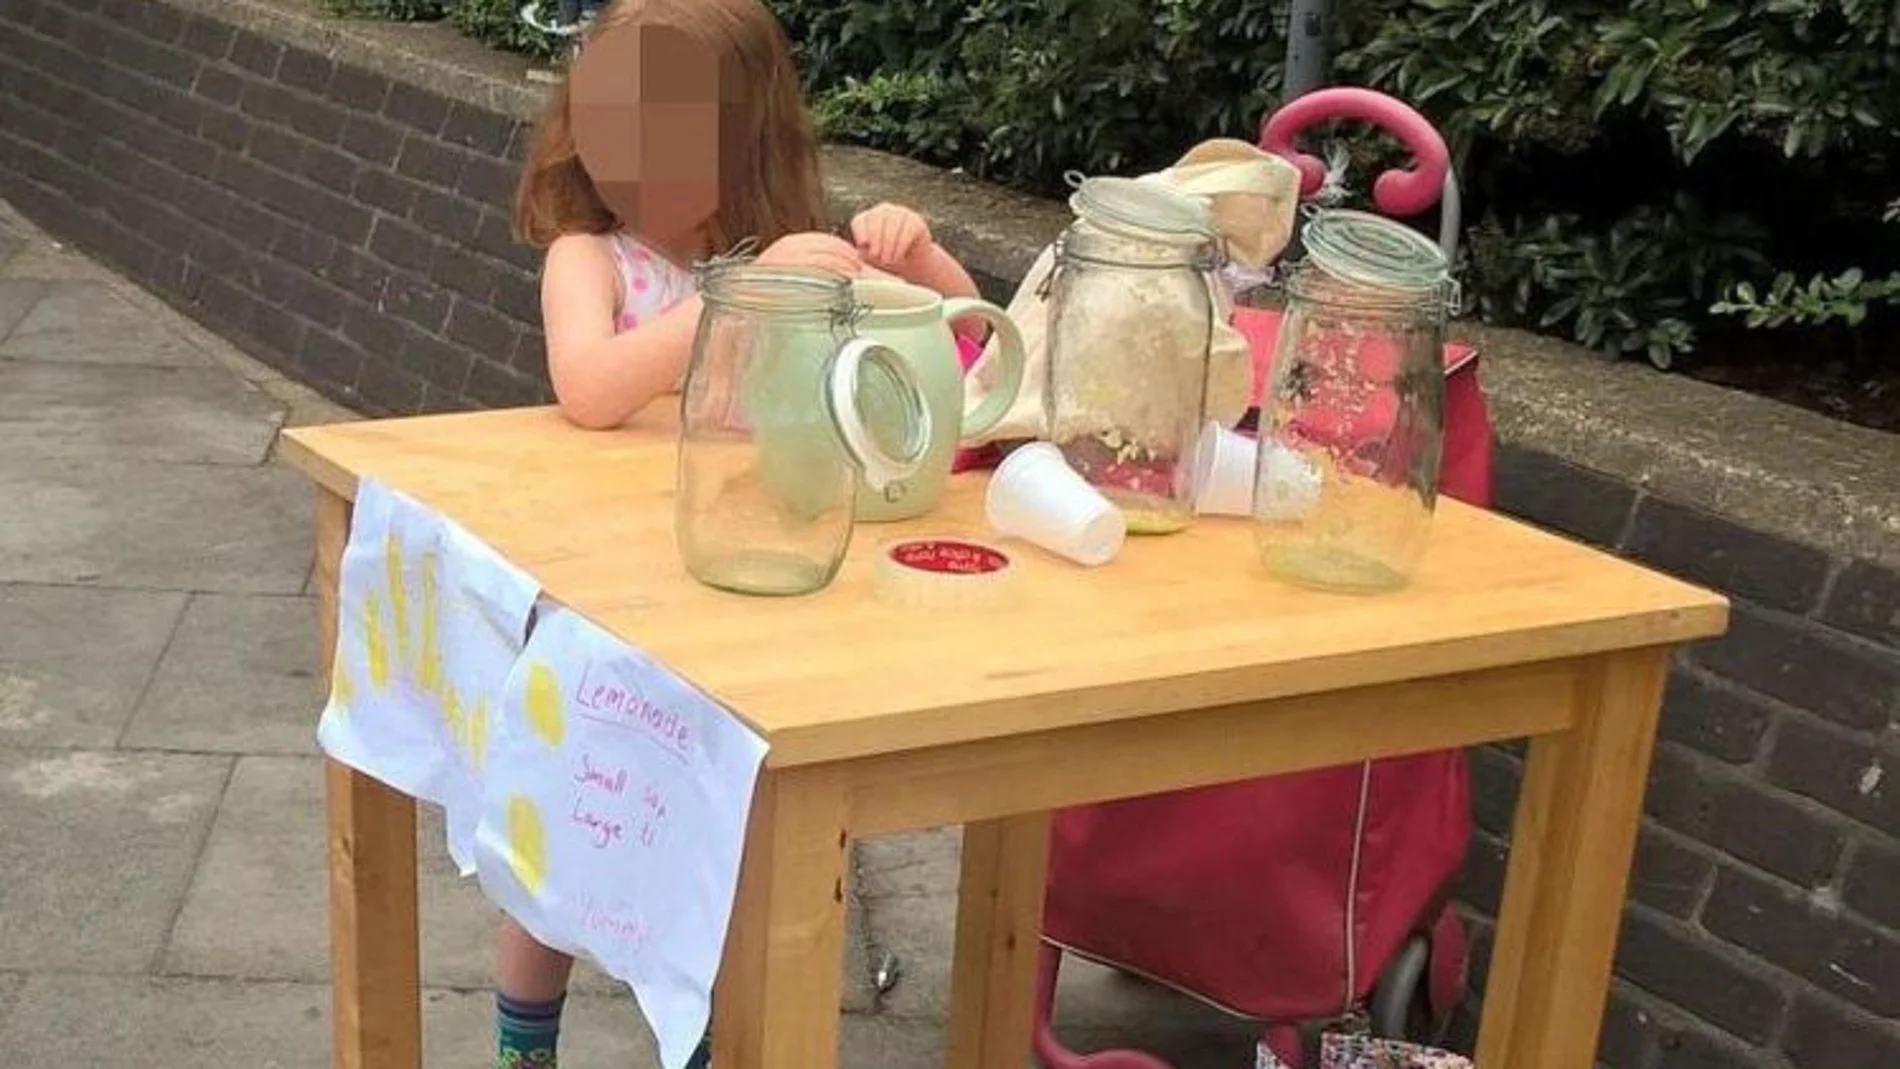 El puesto de limonada montado por la niña en la calle